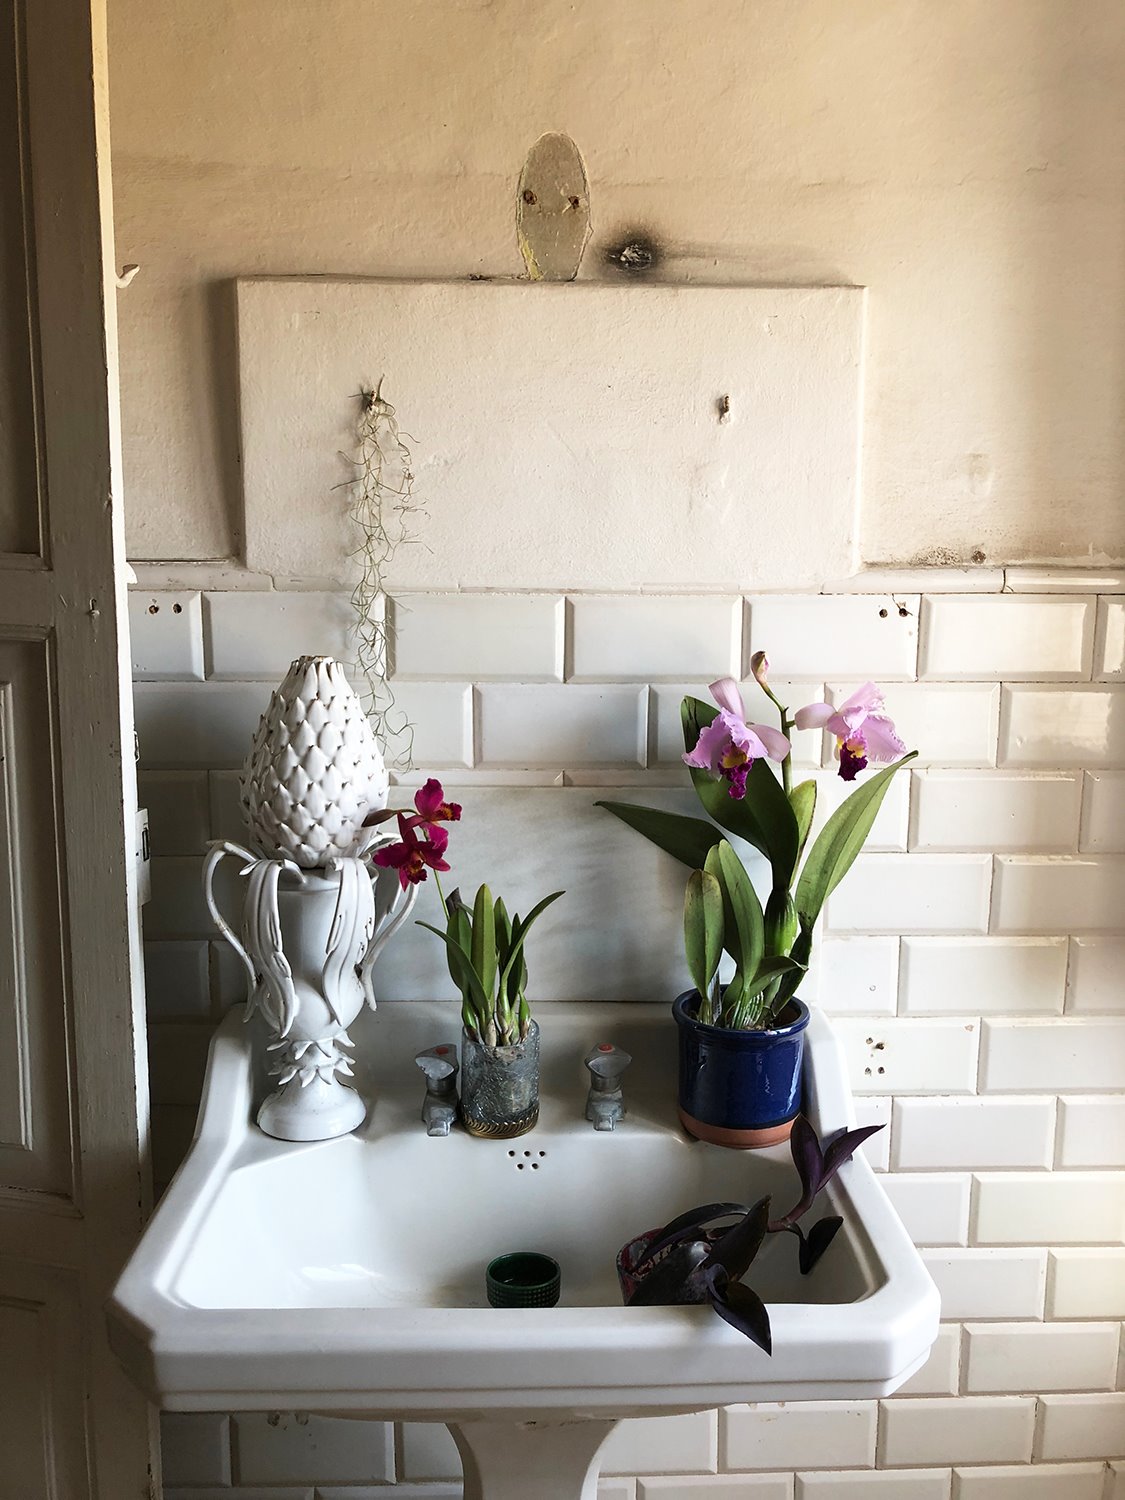 El baño del artista con varios conjuntos de flores y plantas. La imagen es de lo más evocadora.